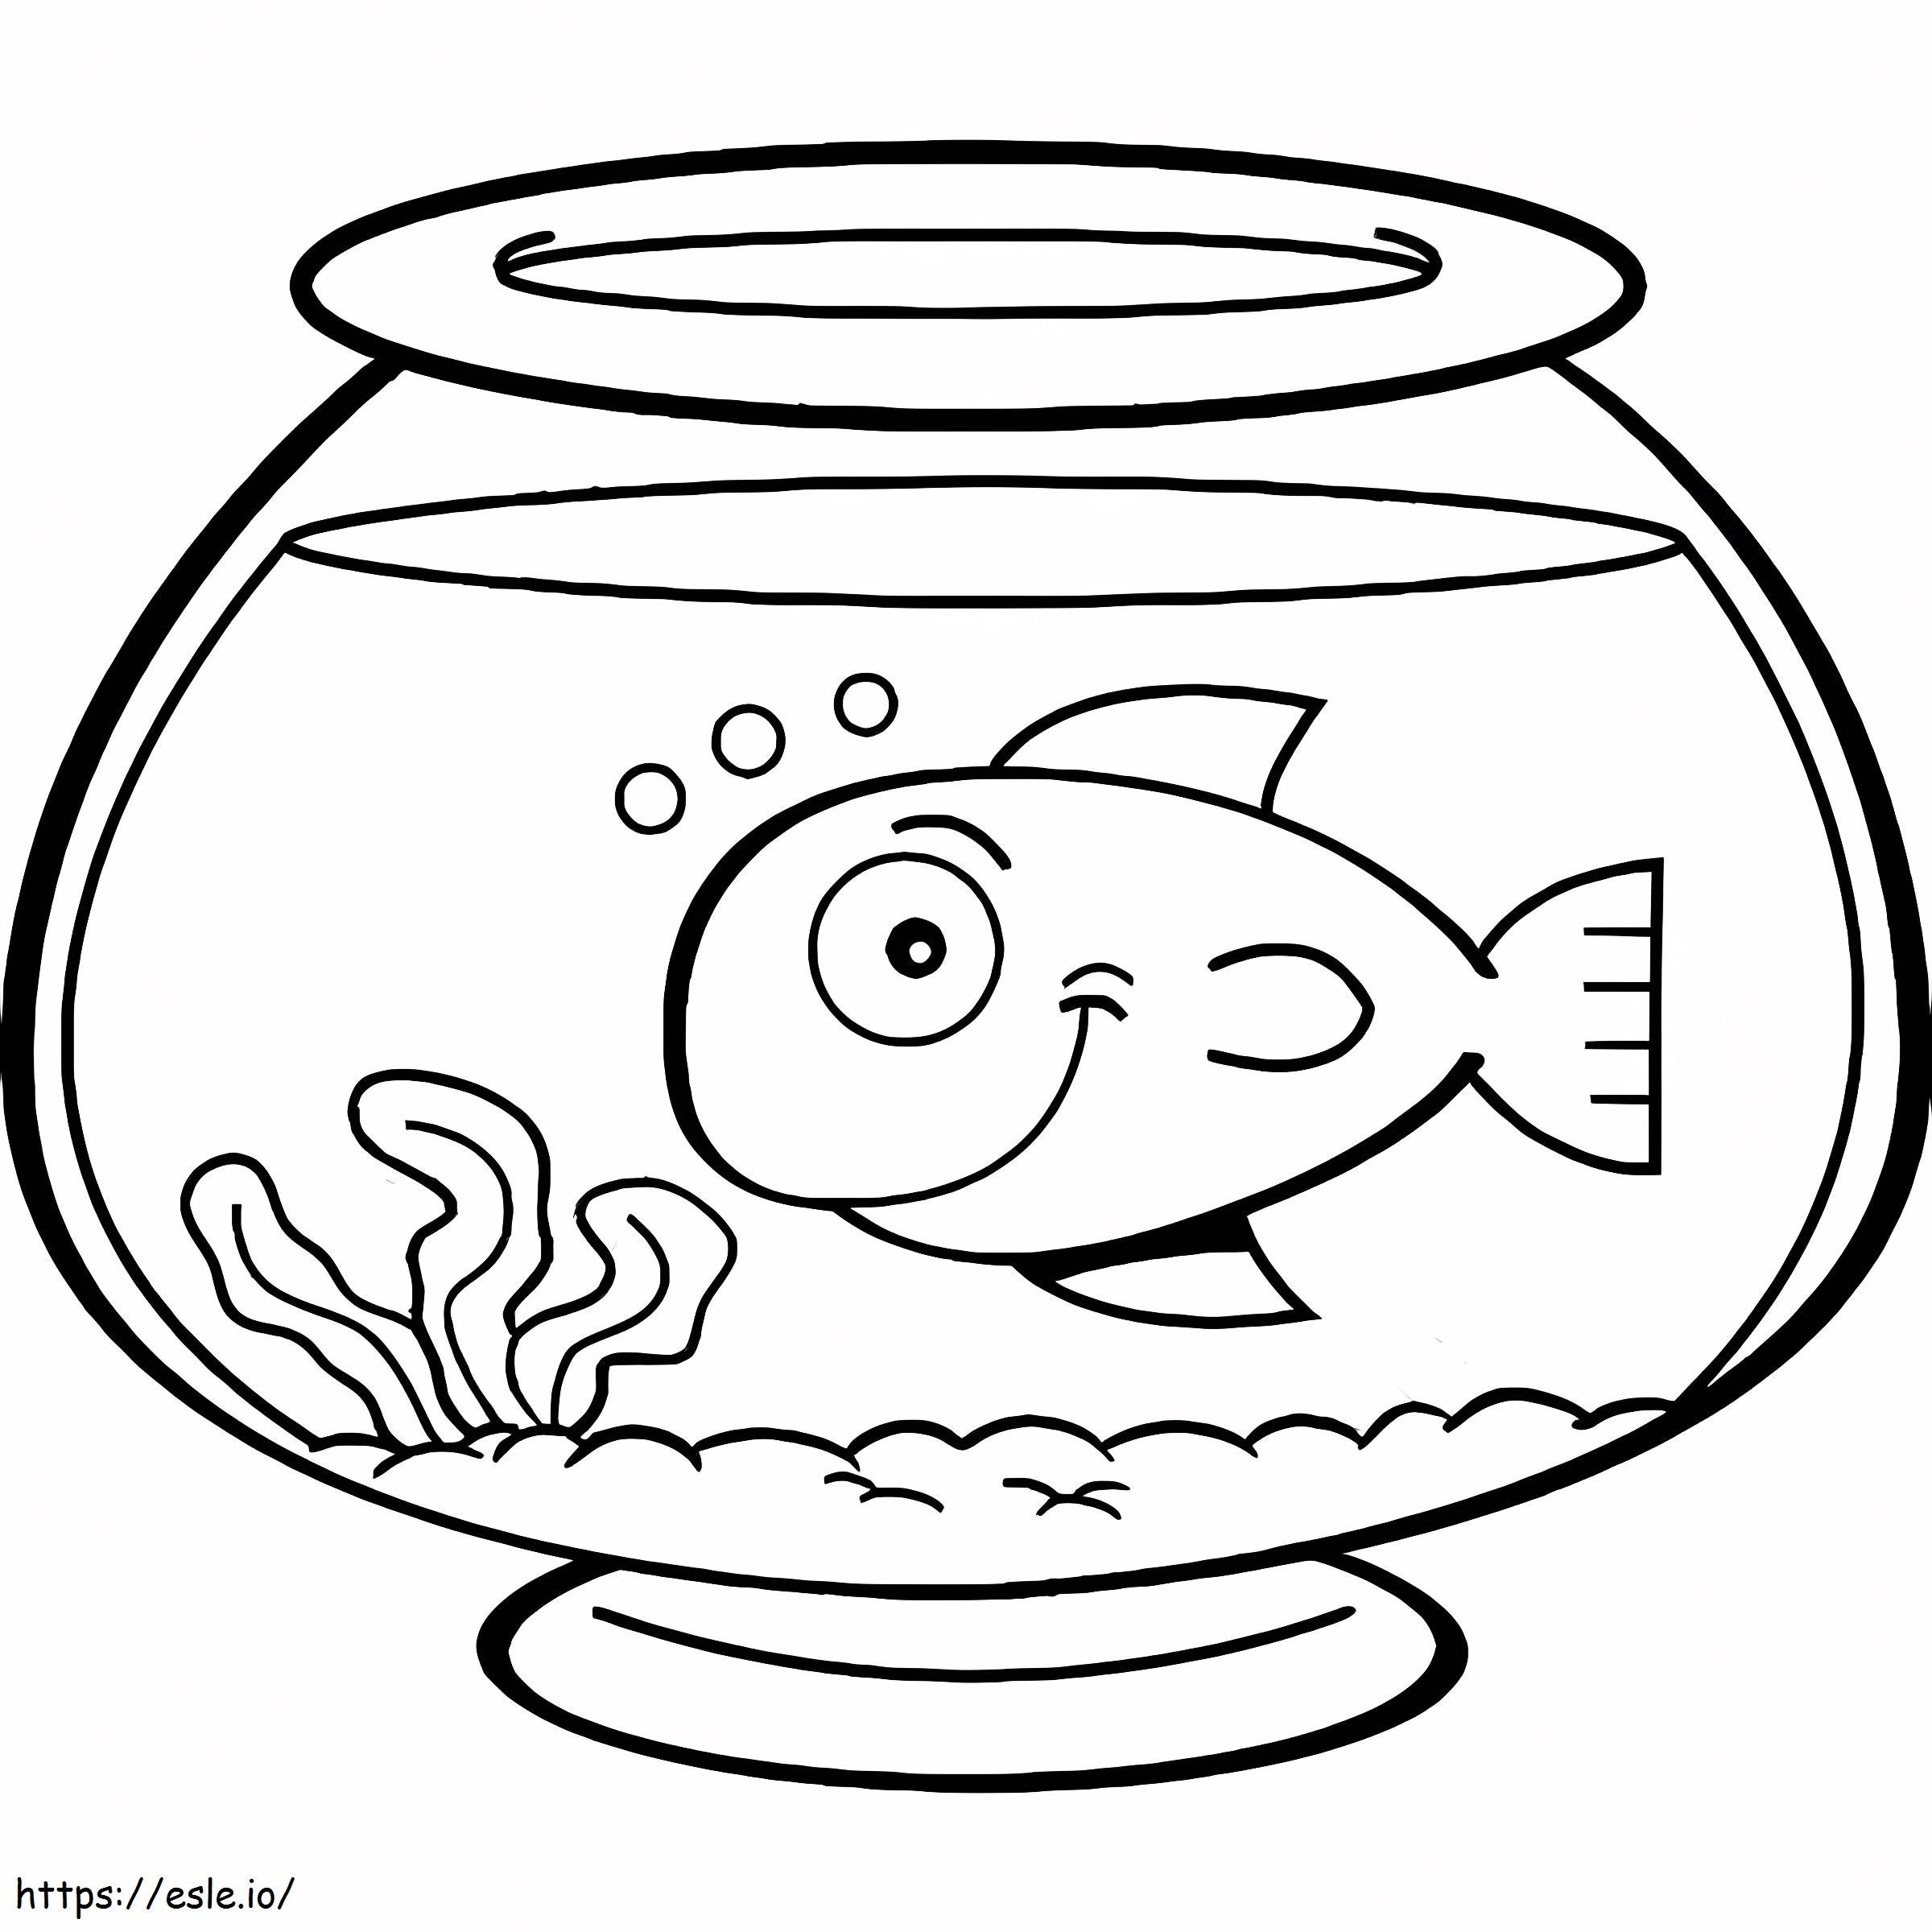 Bol pentru pește de desene animate de colorat